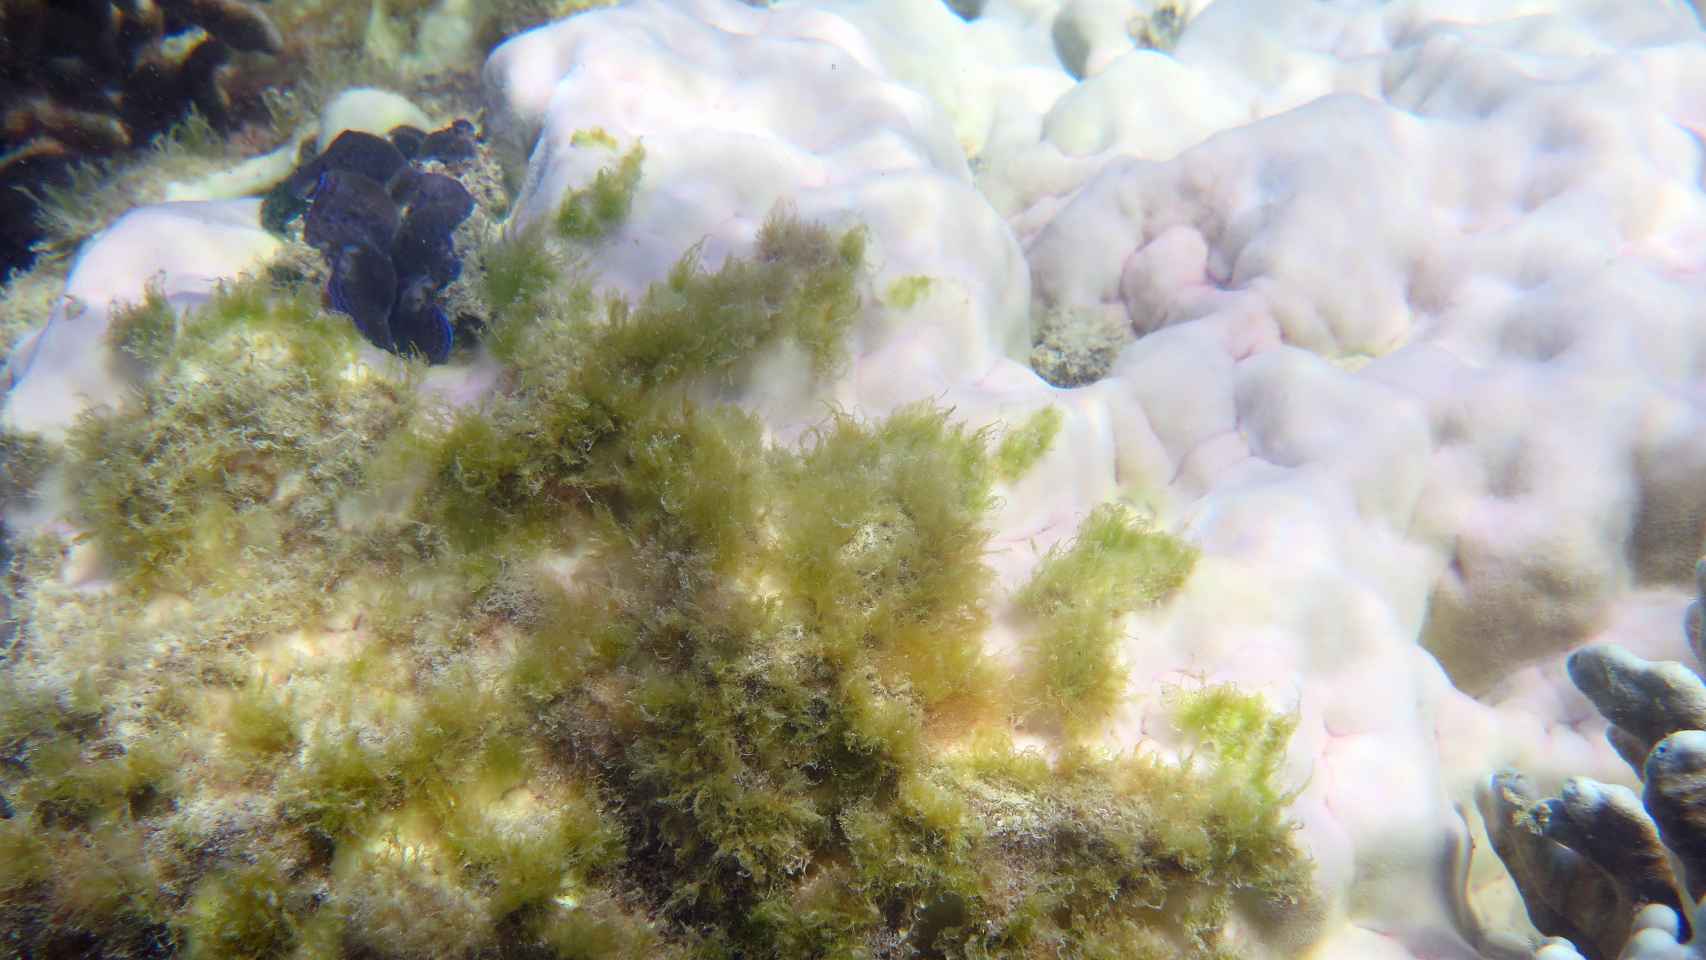 Coral enfermo siendo colonizado por el blanqueamiento en Lizard Island.